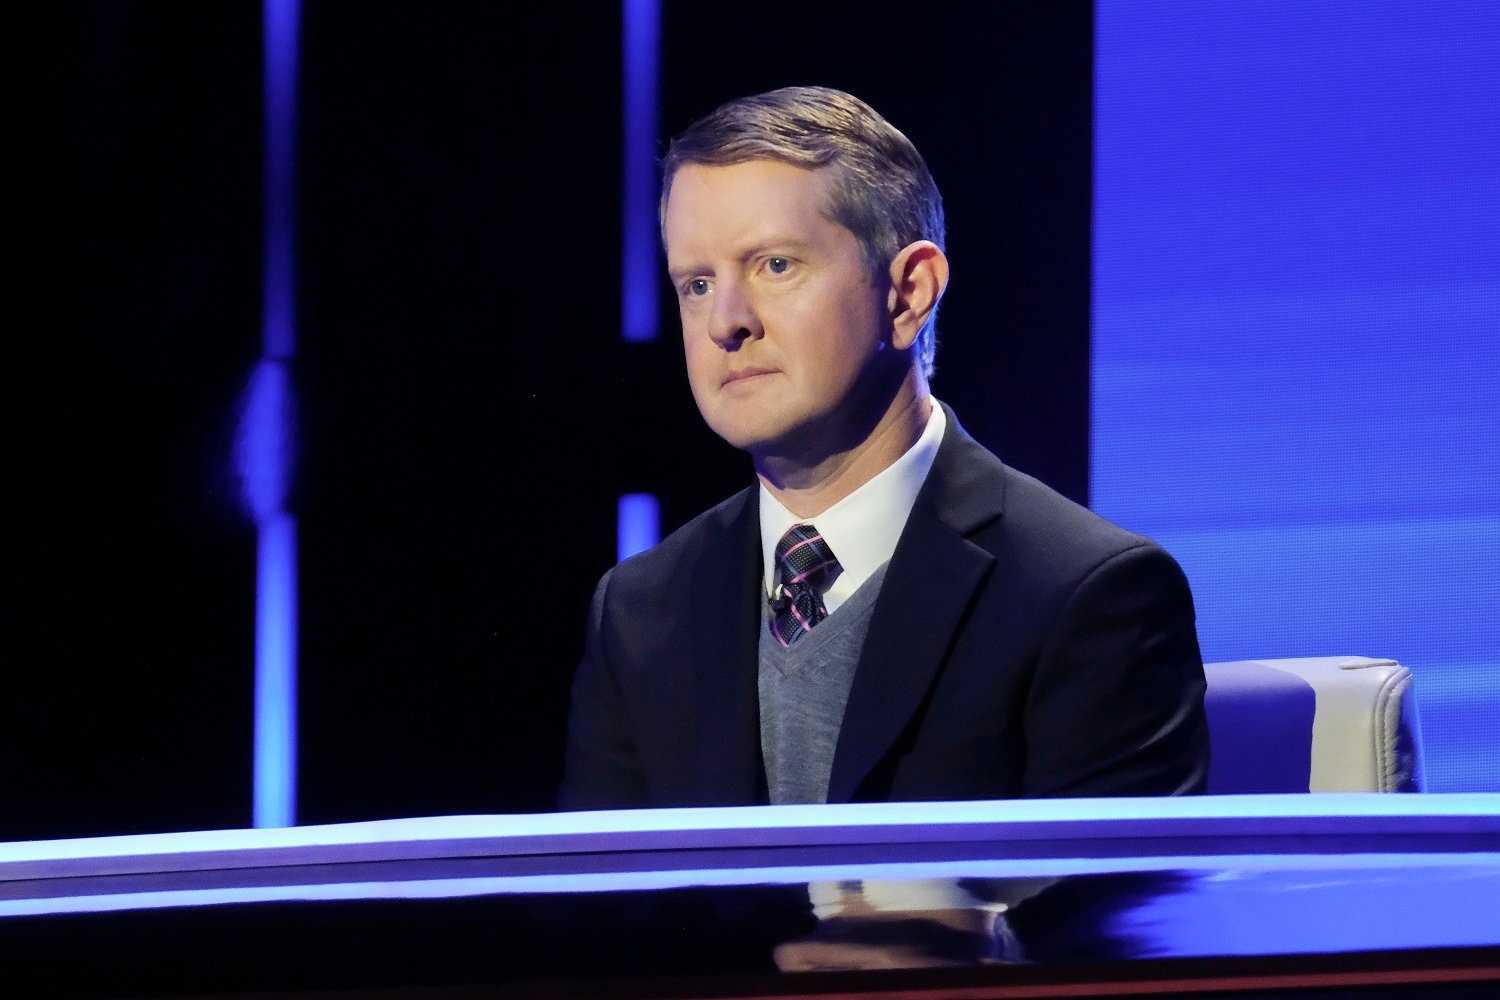  Ken Jennings of Jeopardy fame